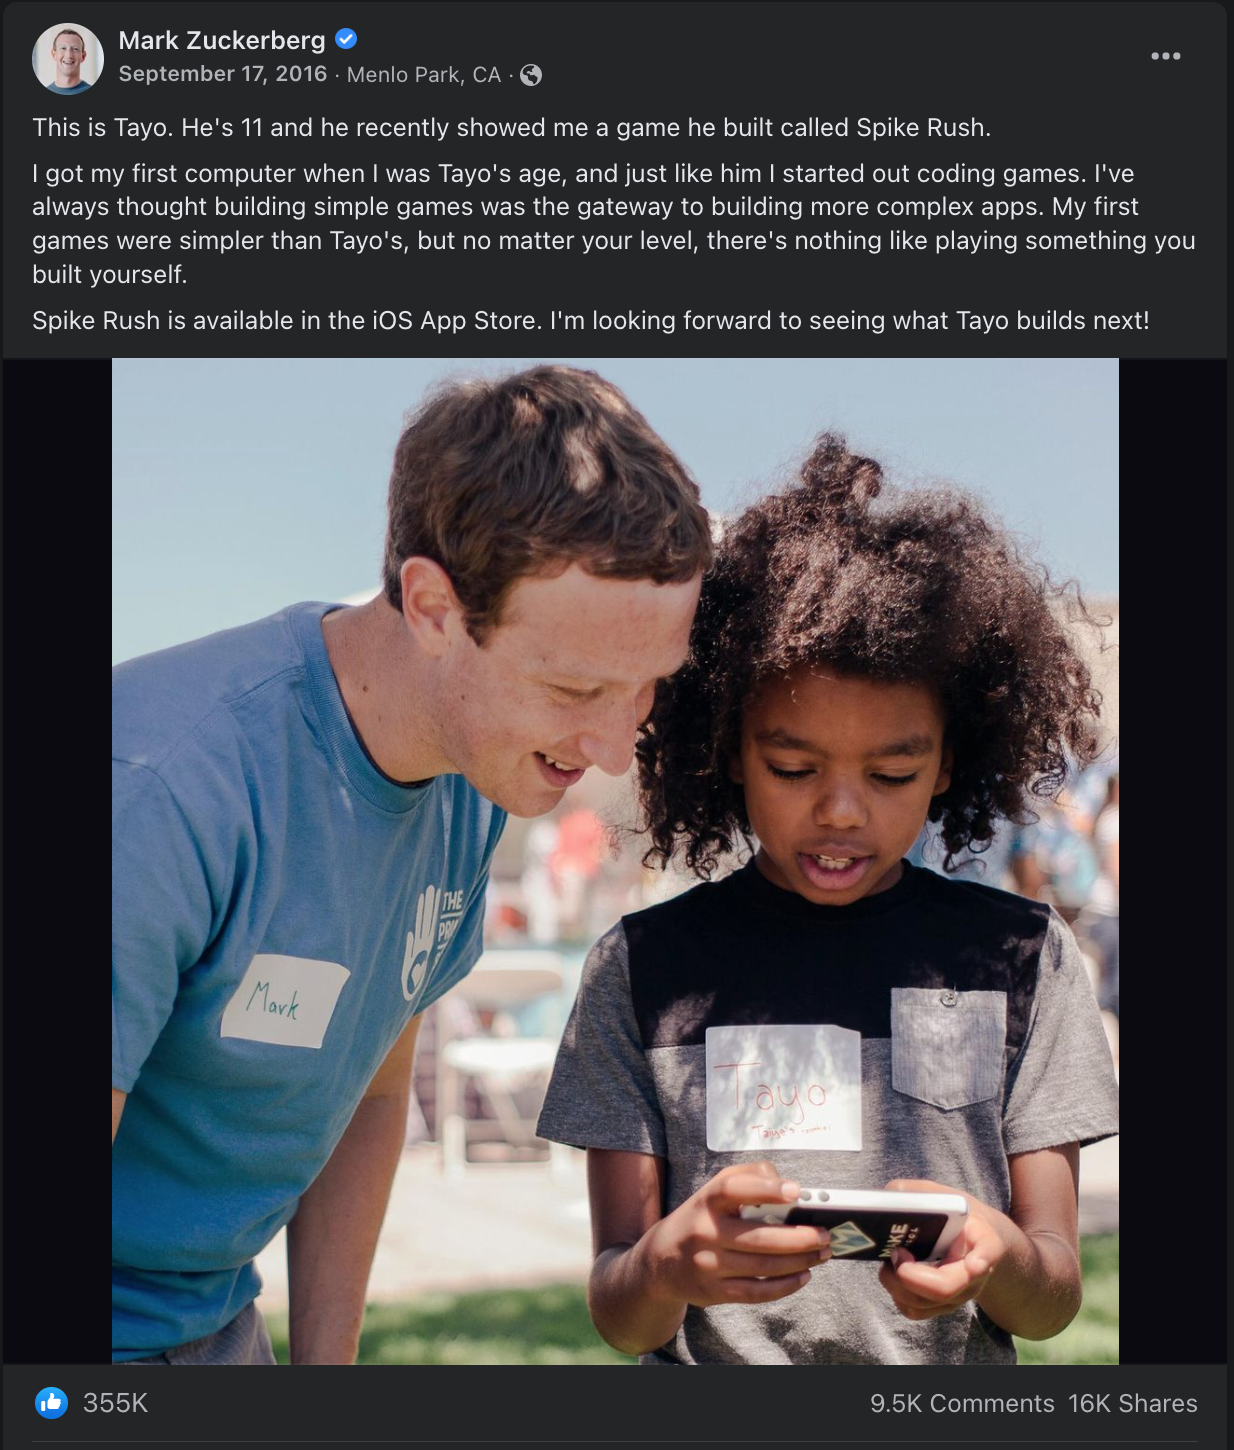 Mark Zuckerberg praises Tayo's App, Spike Rush